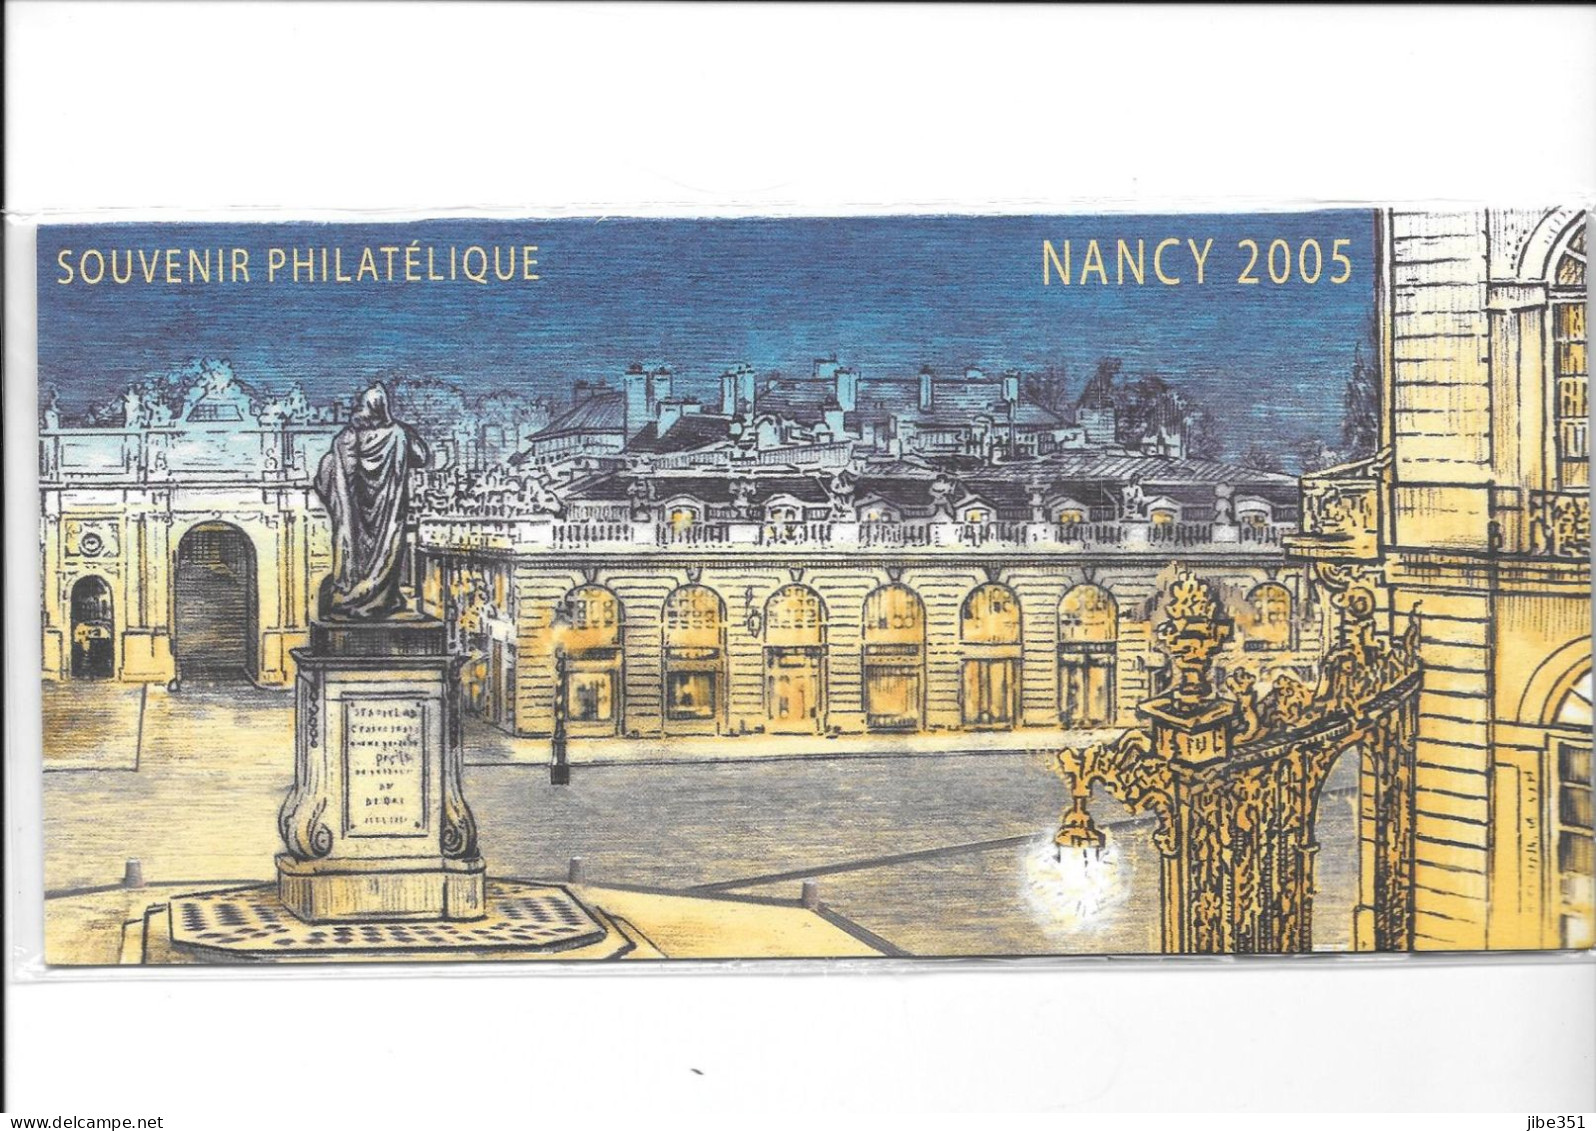 Souvenir Philatélique Nancy 2005 Neuf Sous Blister - Foglietti Commemorativi